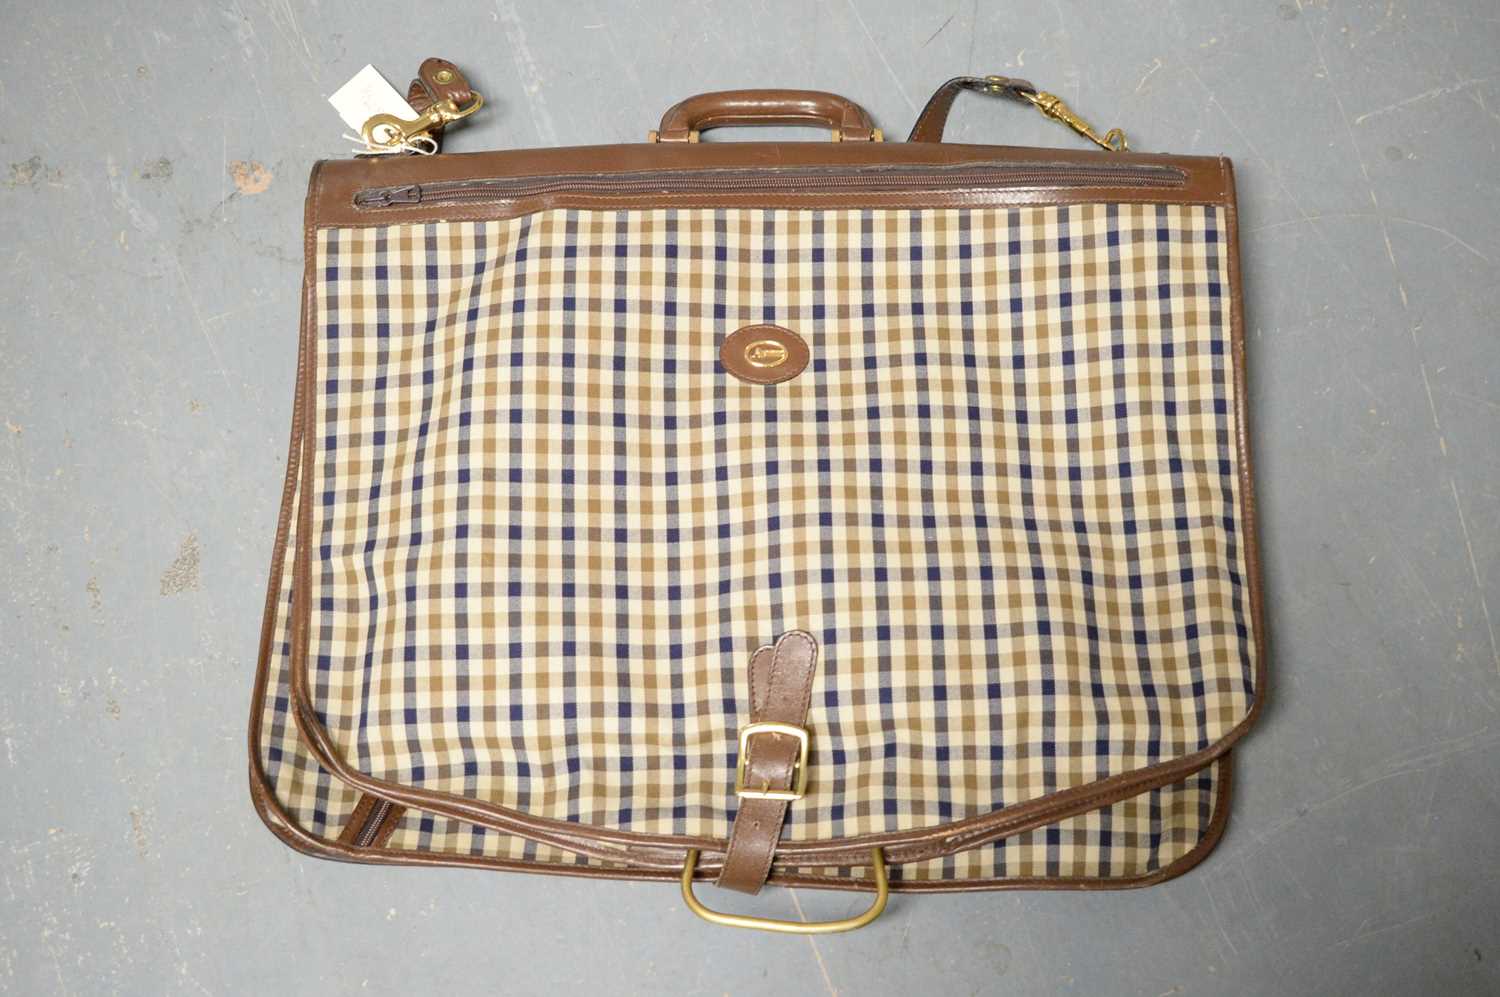 An Aquascutum suit bag or garment carrier